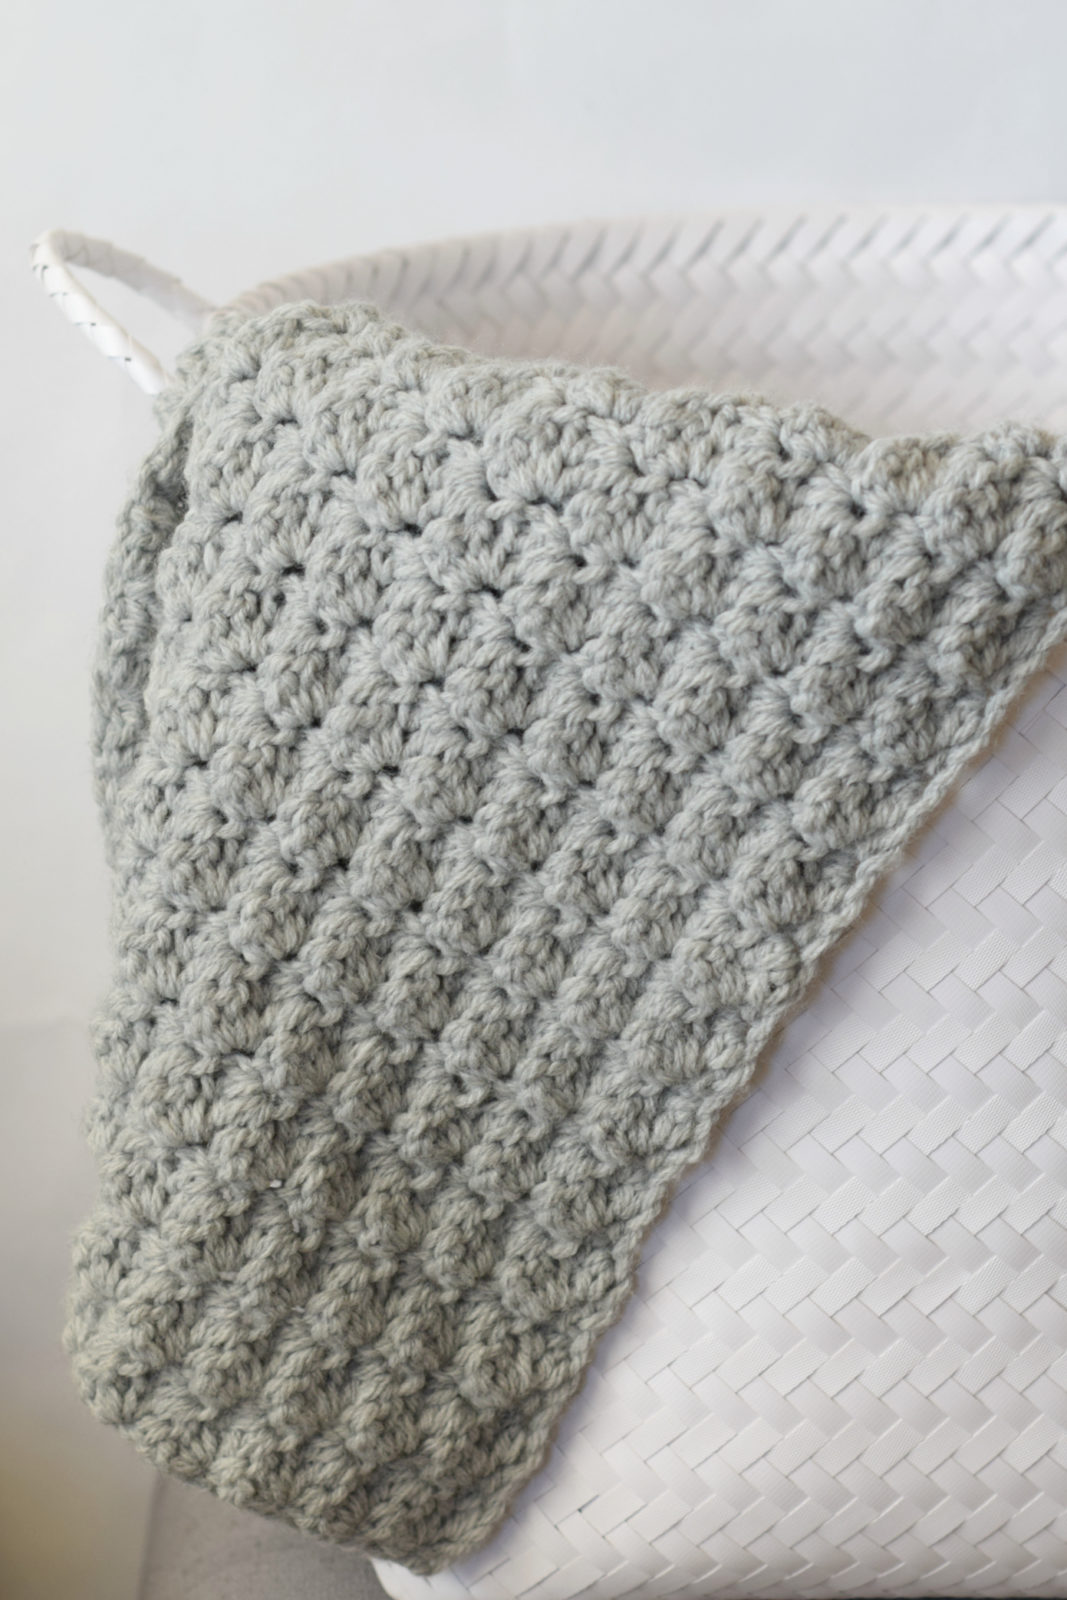 EASIEST Crochet Blanket For Bulky Yarn - How to Crochet The Mini